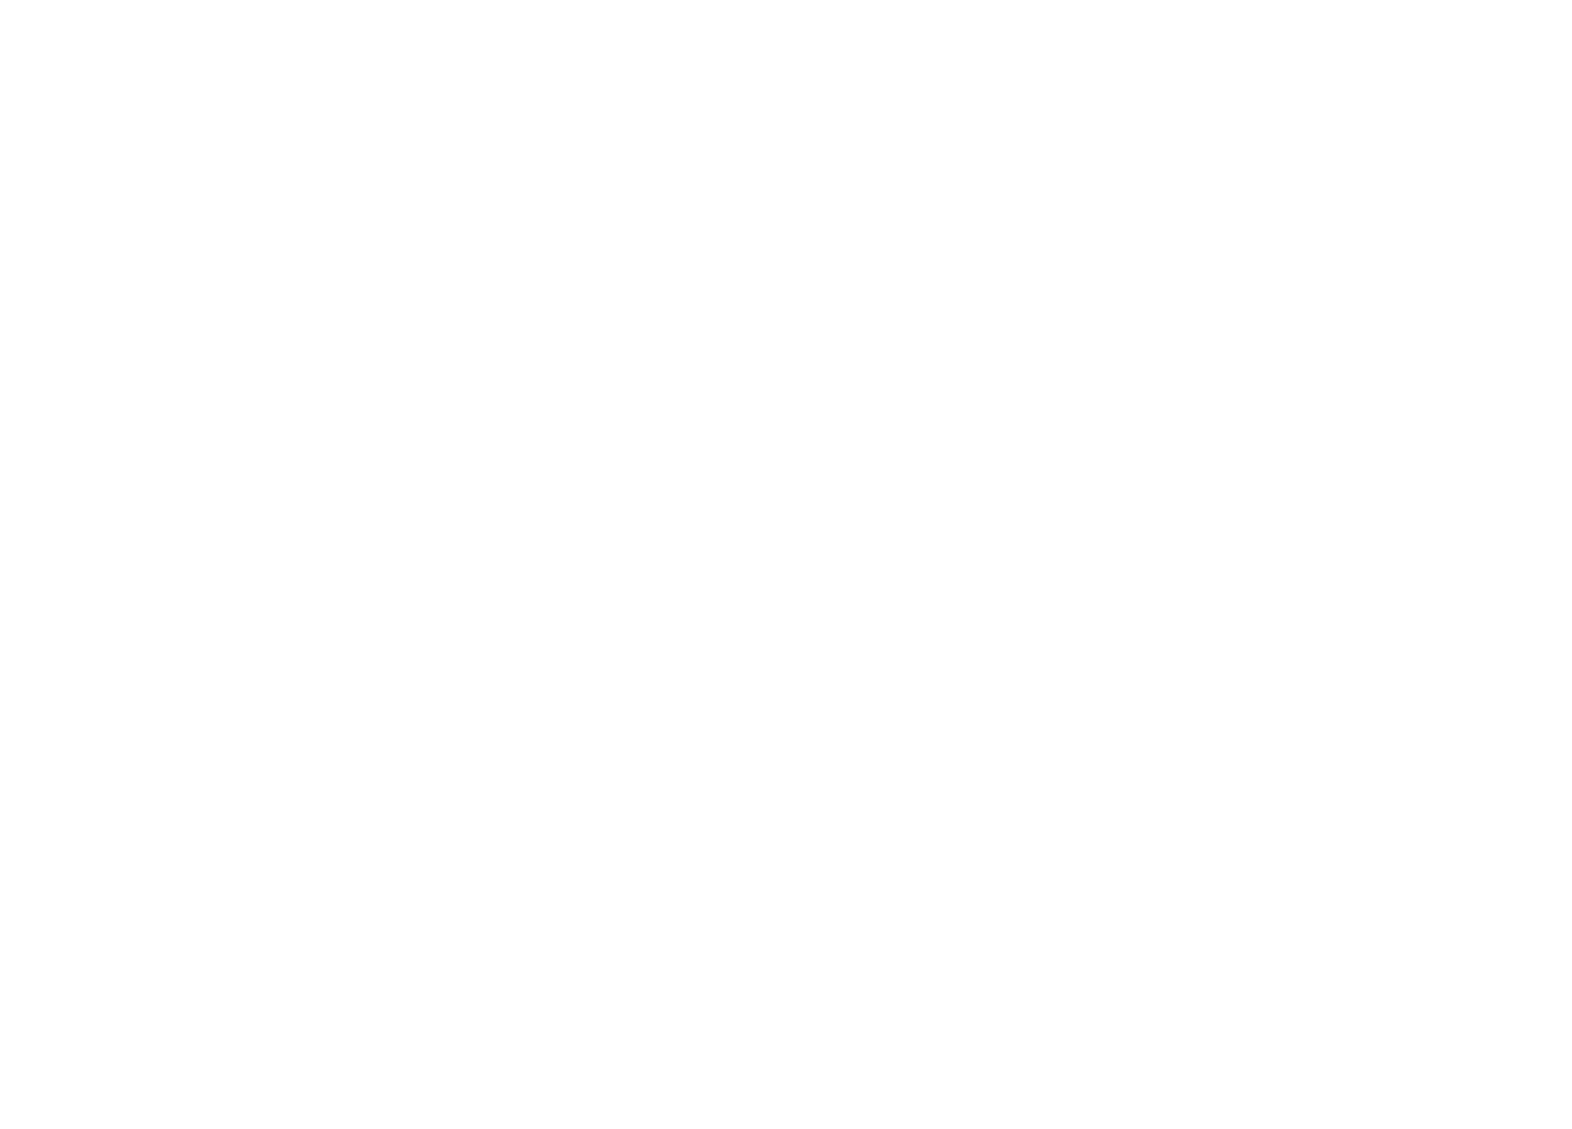 Doosan Enerbility logo for dark backgrounds (transparent PNG)